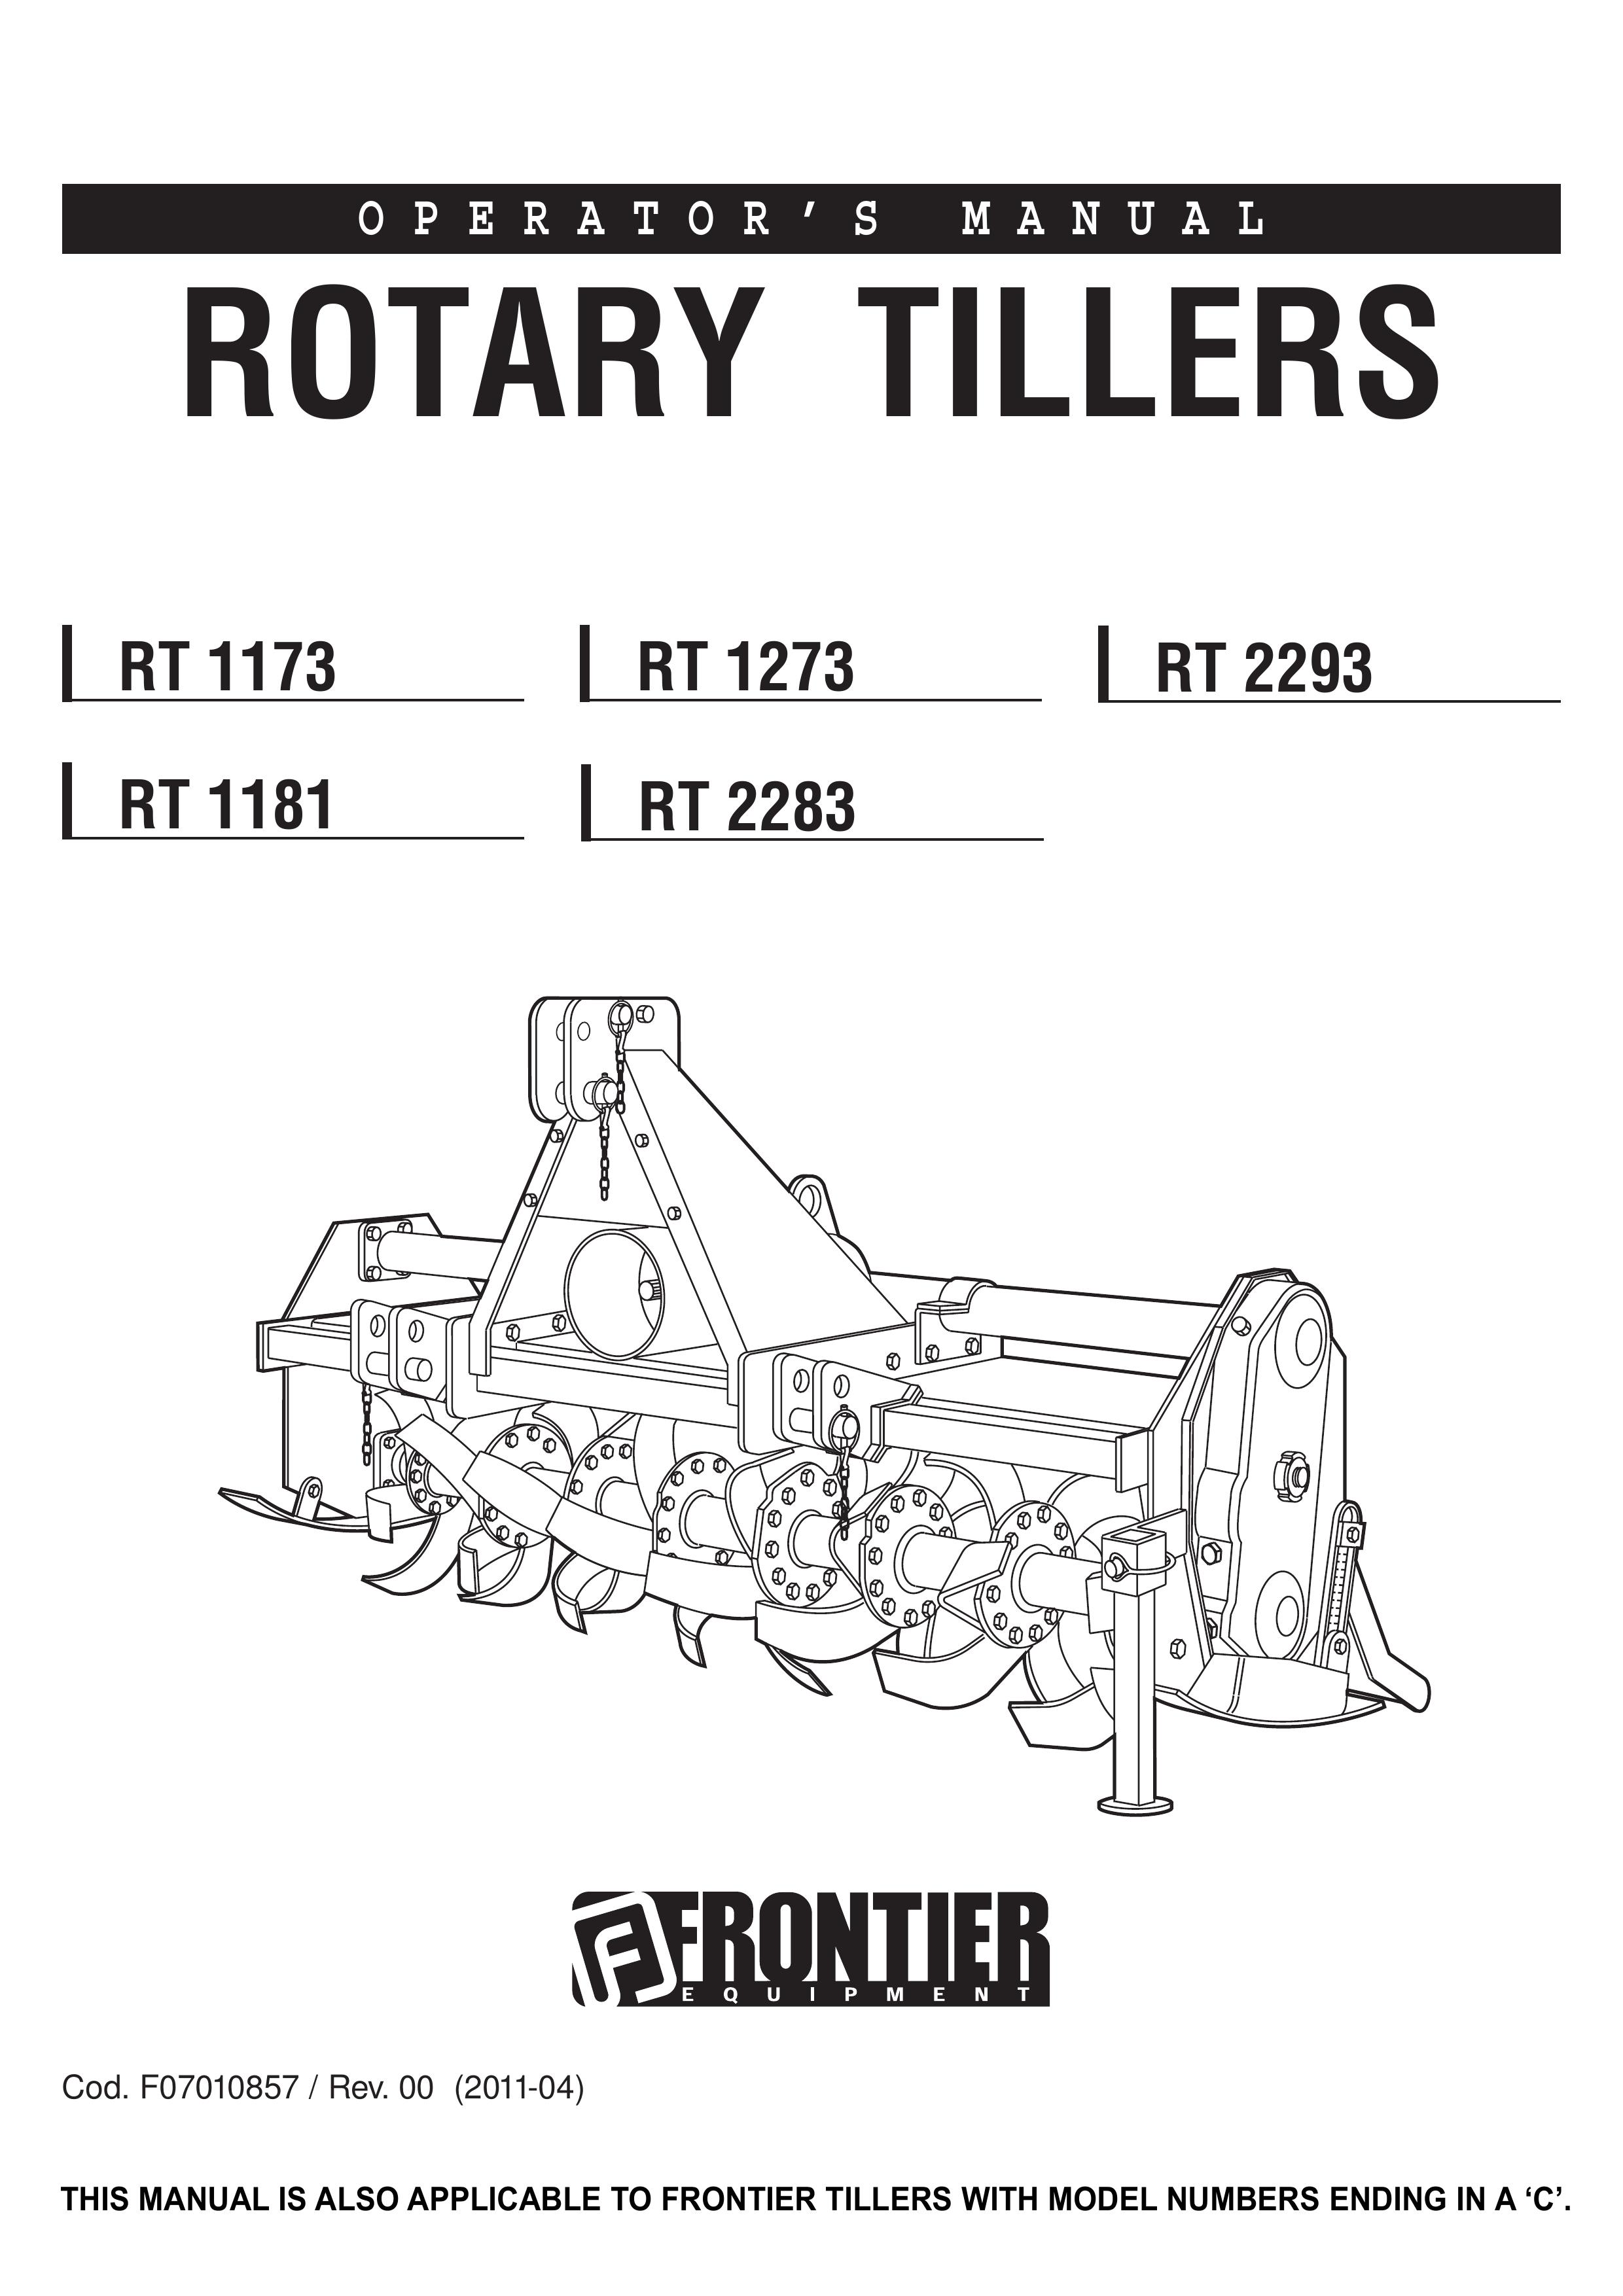 John Deere RT 2293 Tiller User Manual